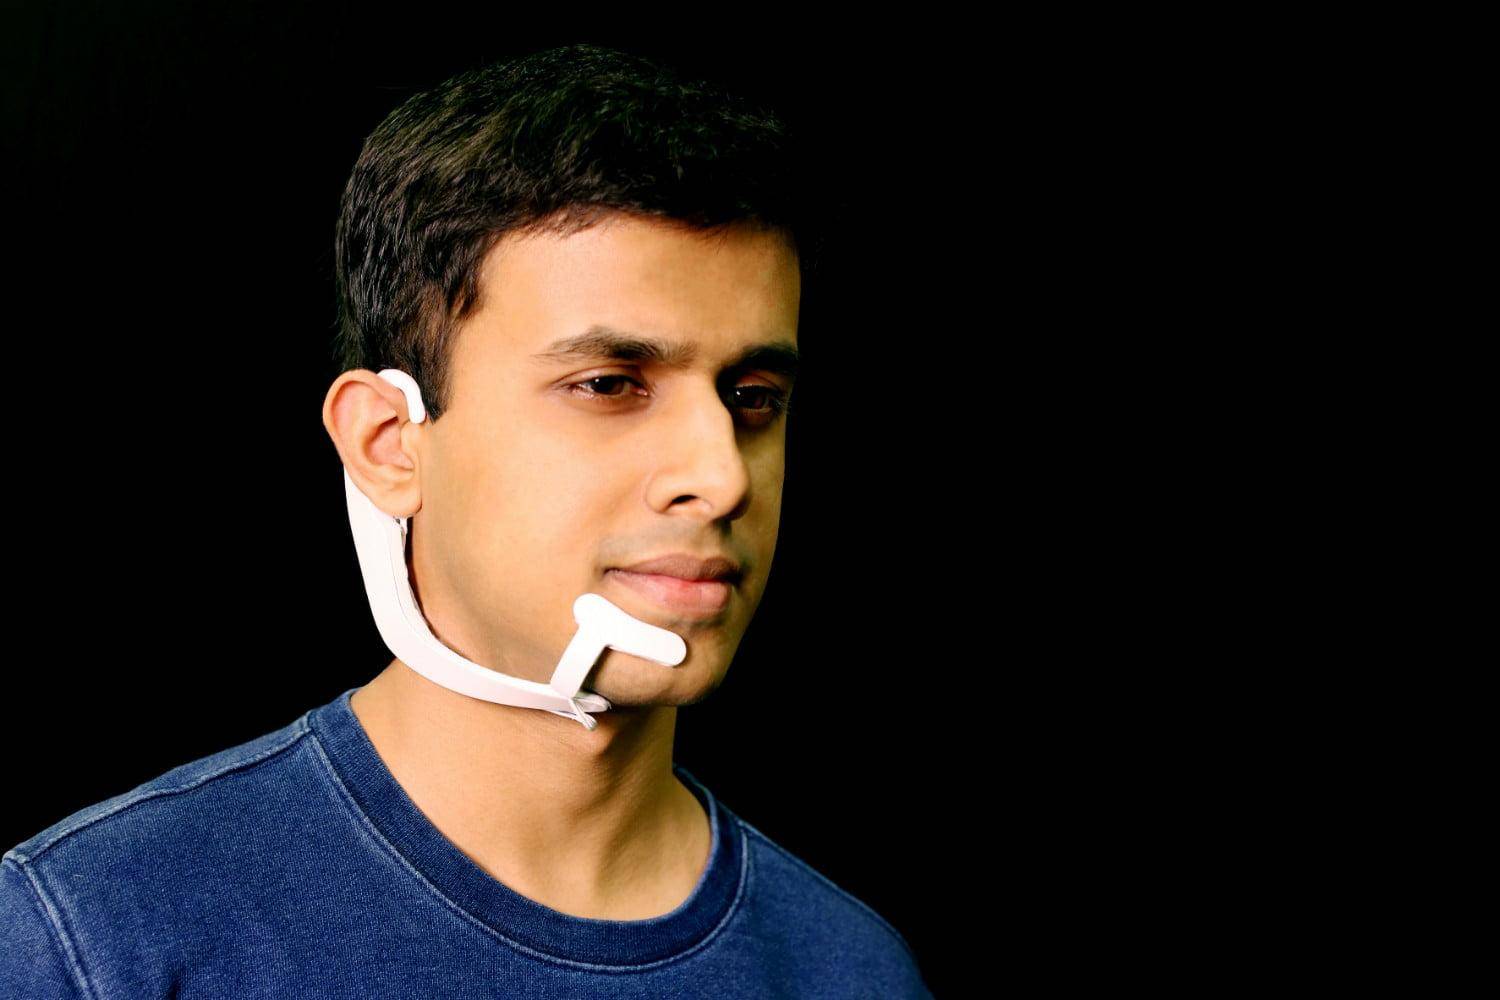 भारतीय युवा ने बनाया एक ऐसा उपकरण, जिससे बिना आवाज़ के बातचीत हो पाएगी